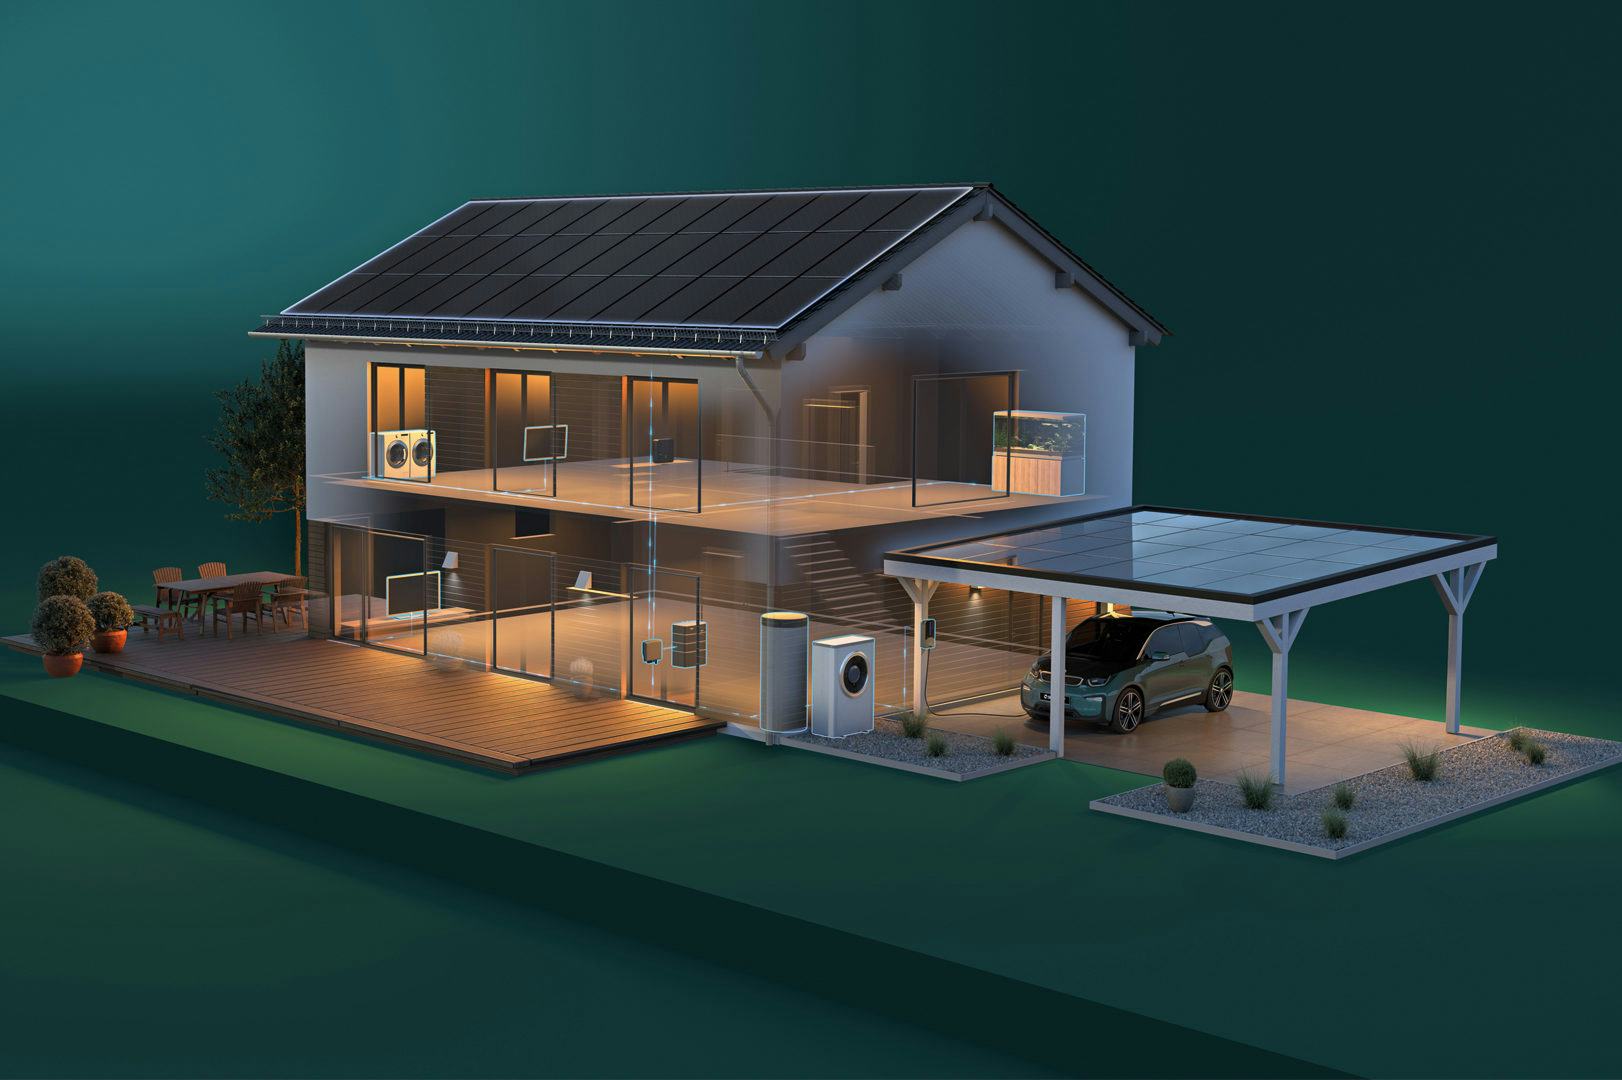 Solarwatt integreert opslag, productie en management van duurzame energie